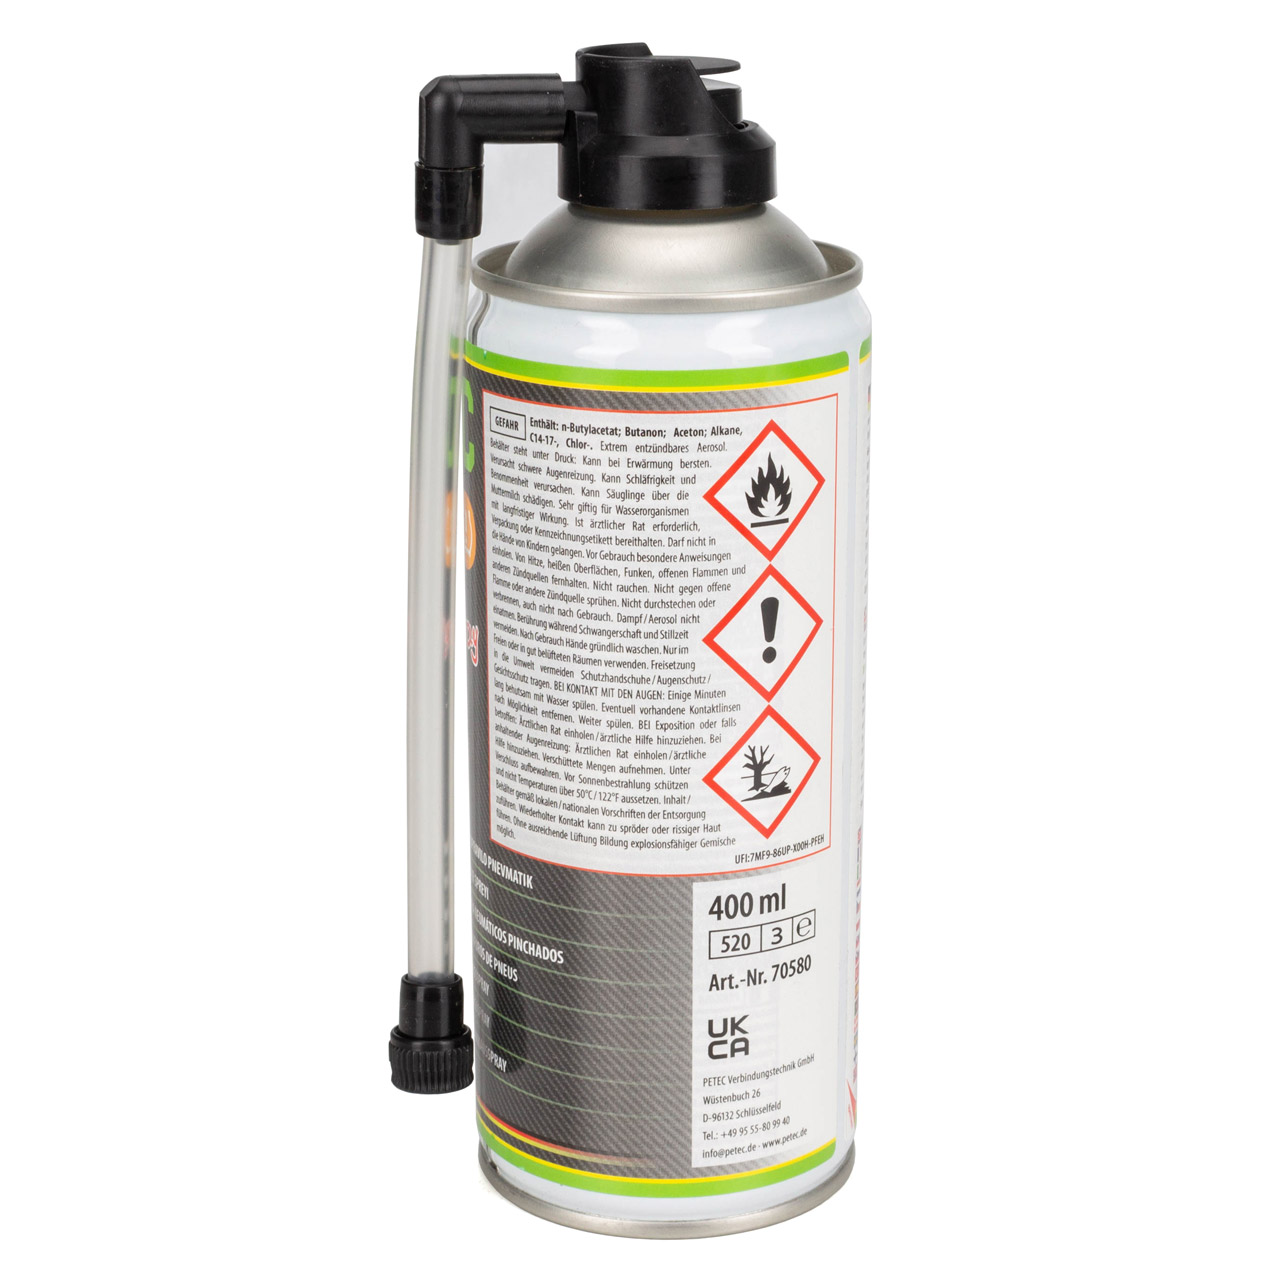 PETEC 70580 Reifenpannenspray Reifendicht Dichtmittel KFZ Reifen Pannenspray Spray 400ml